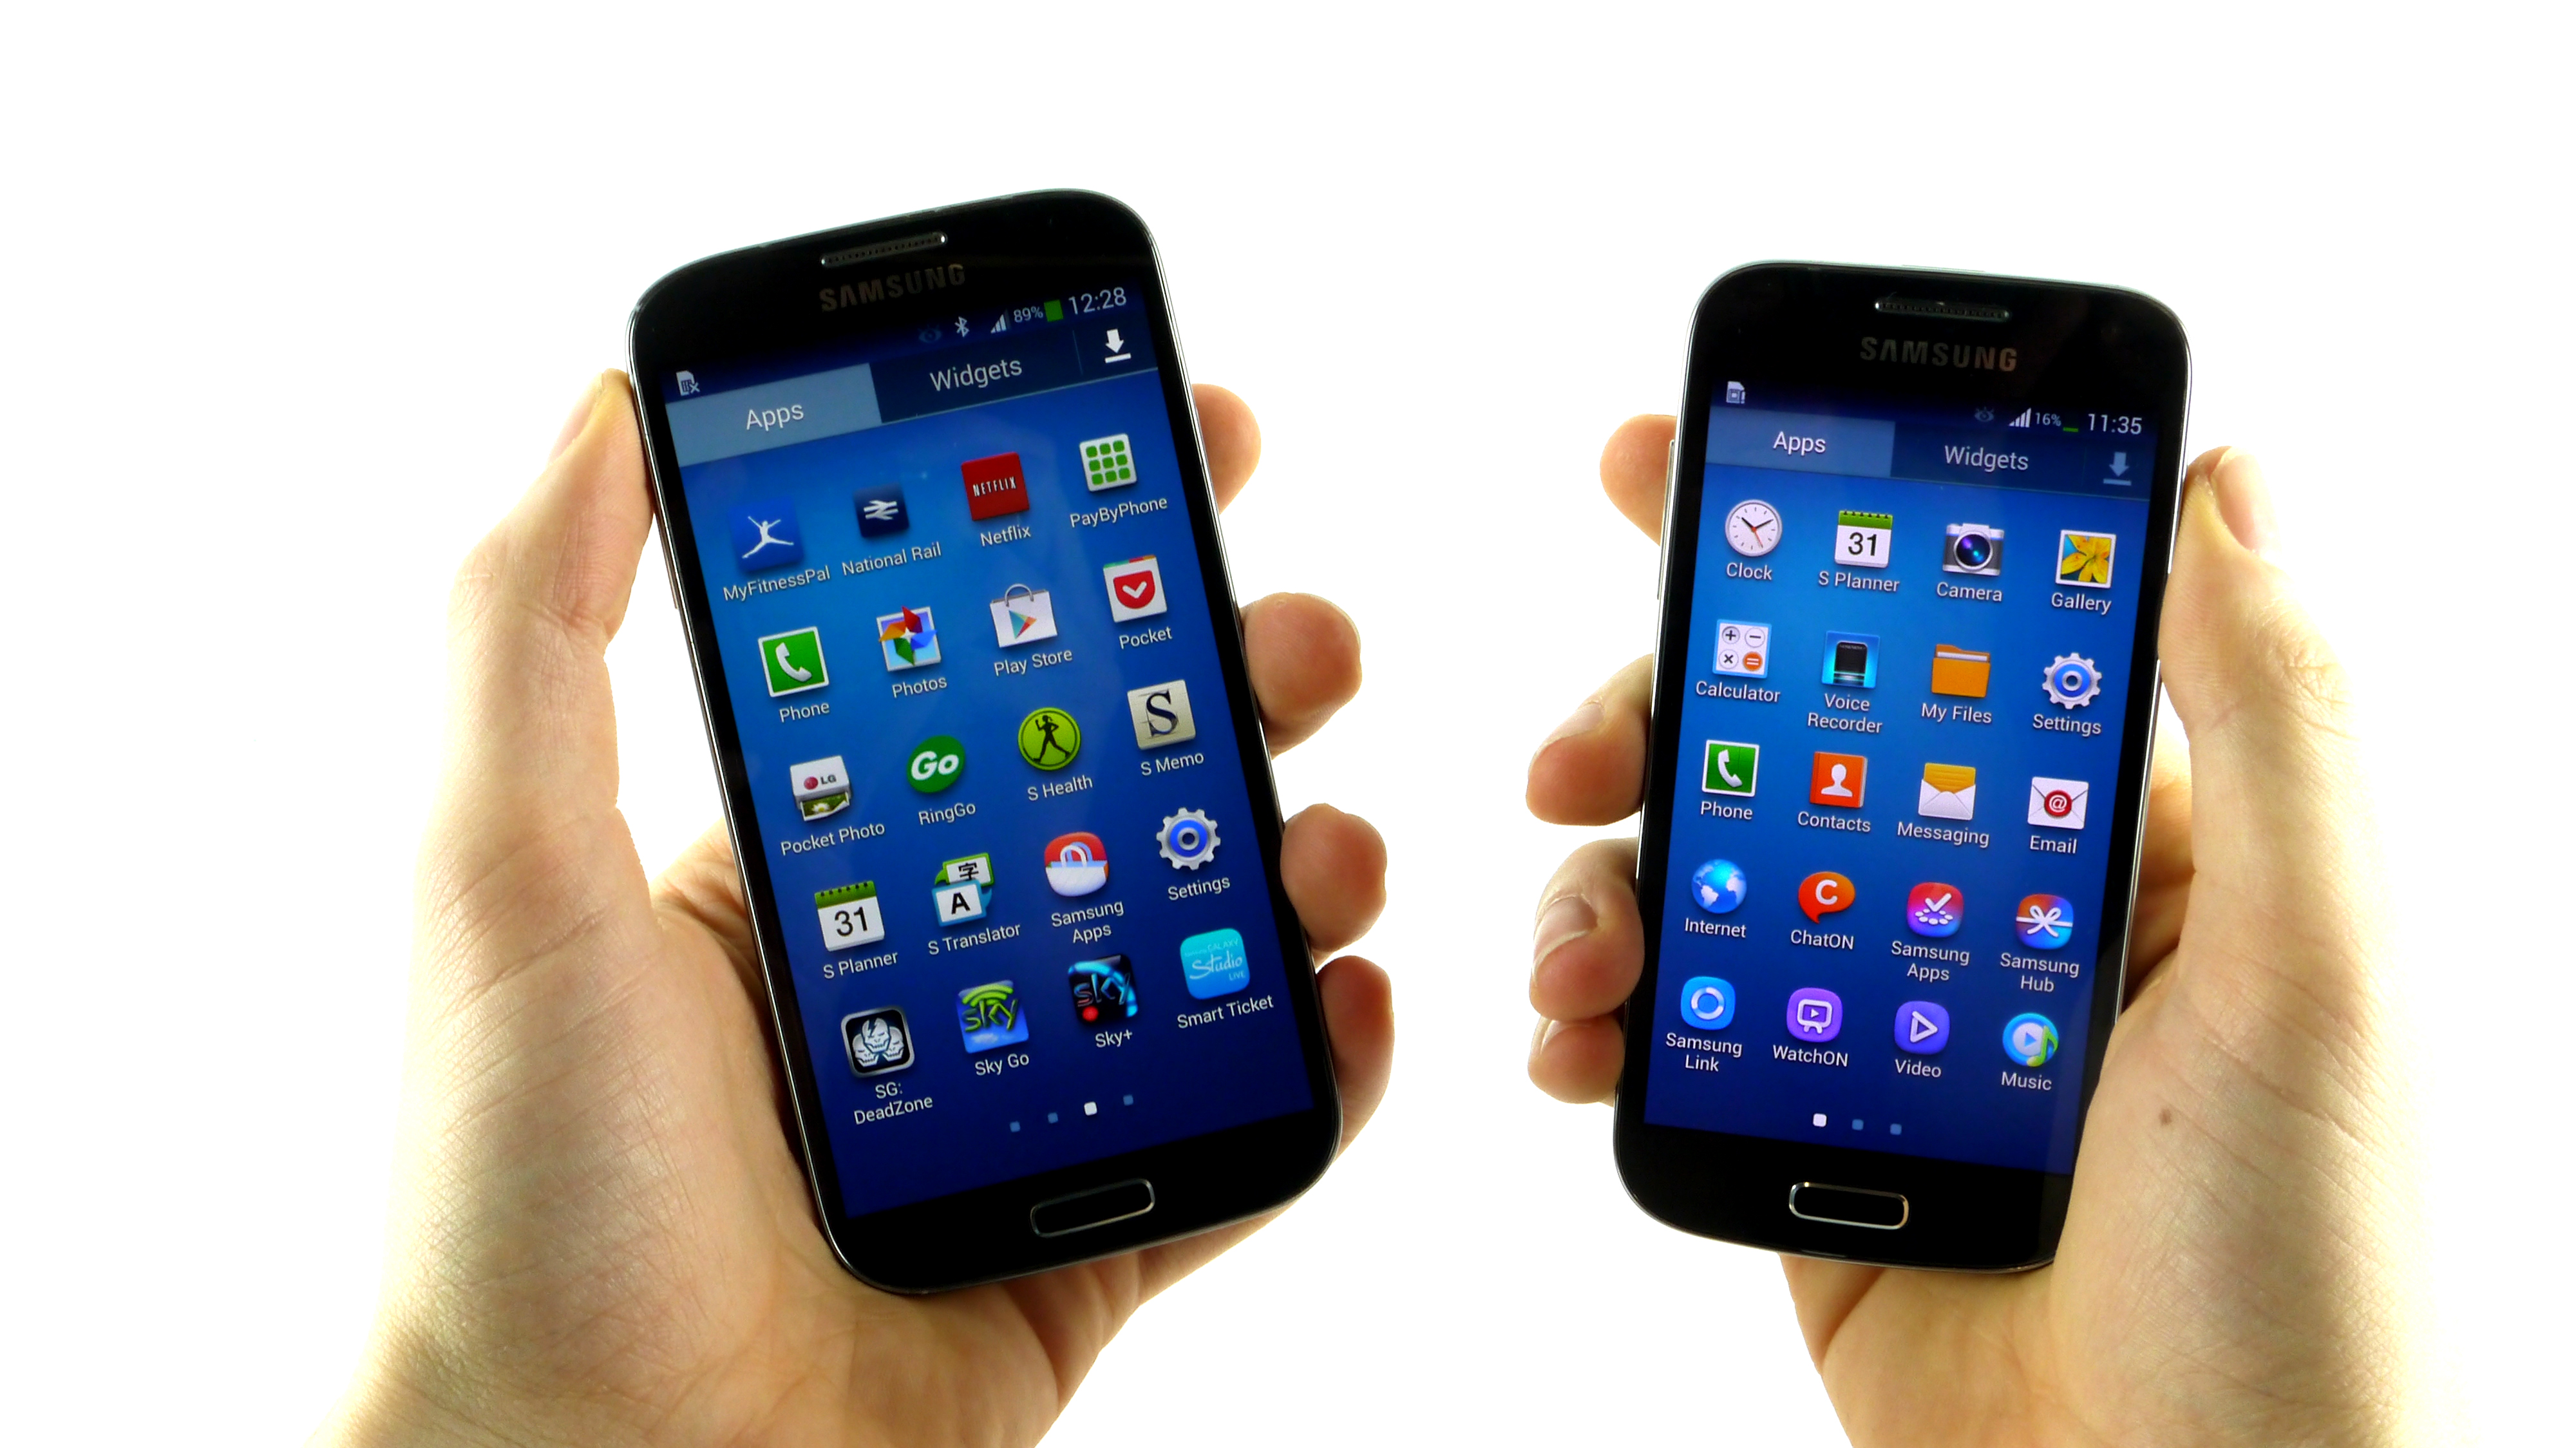 Samsung Galaxy S4 in Galaxy S4 mini